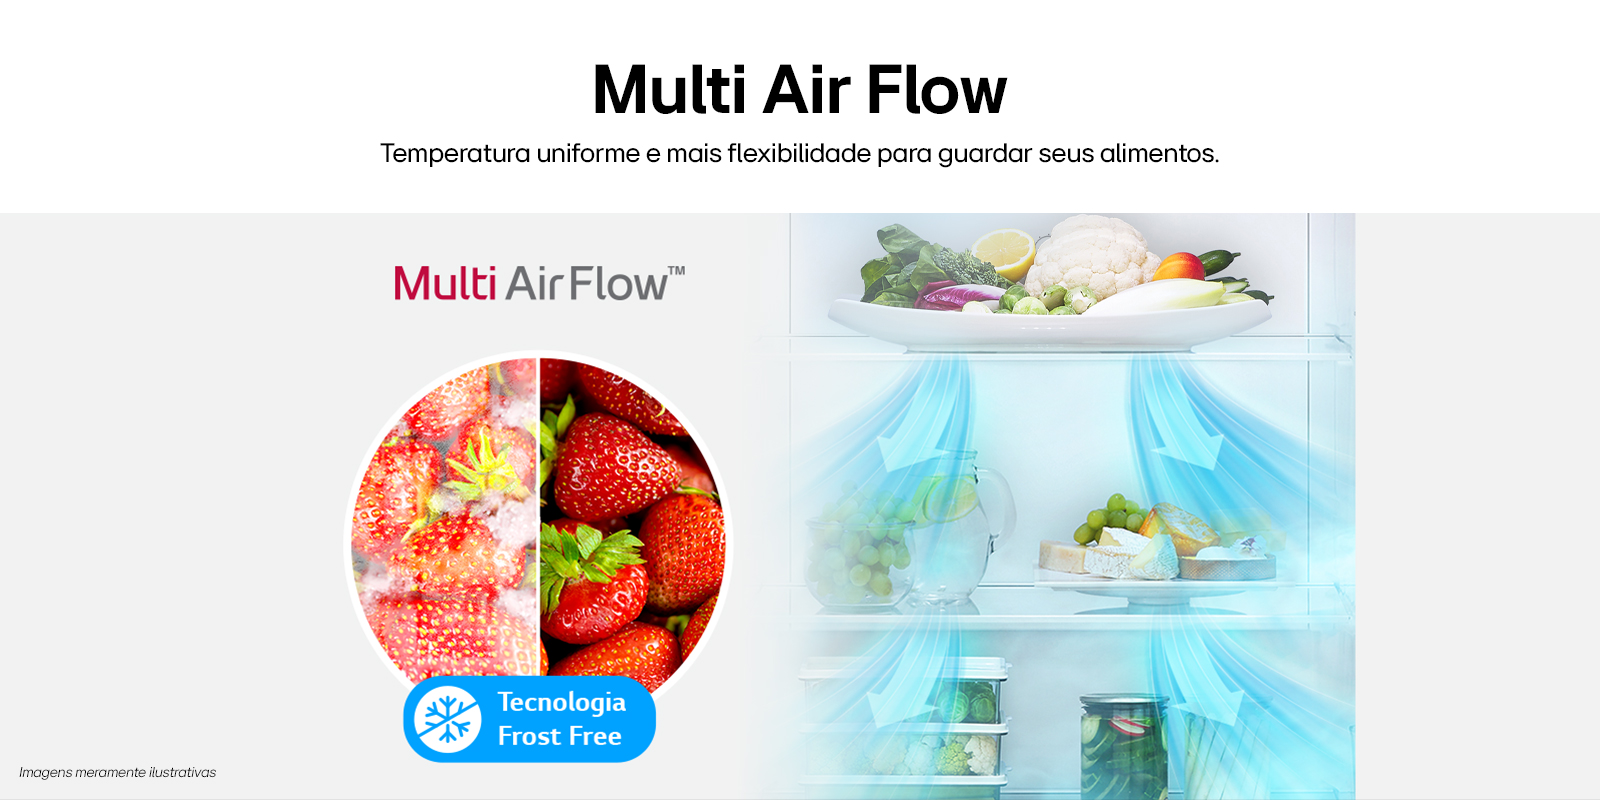 Ilustração da circulação do ar dentro da geladeira garantindo a fescancia e qualidade dos alimentos